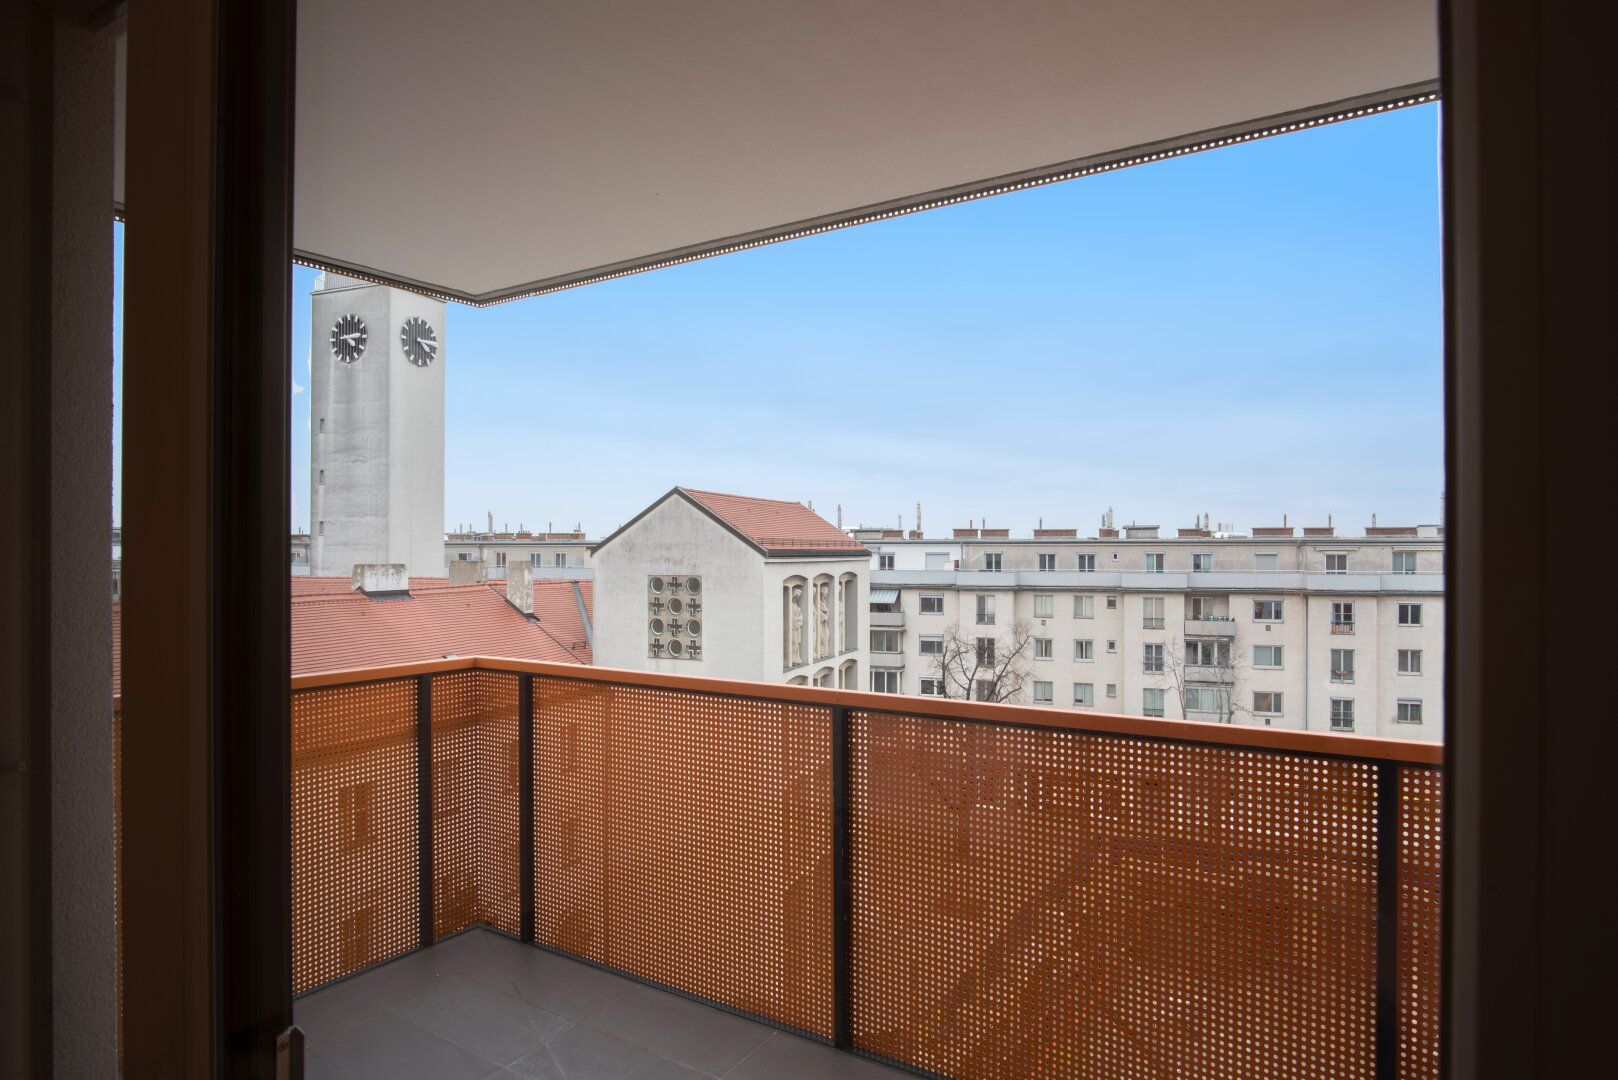 Neubau! 2-Zimmer-Wohnung mit Fußbodenheizung und -Kühlung, großem Balkon und Aussicht!